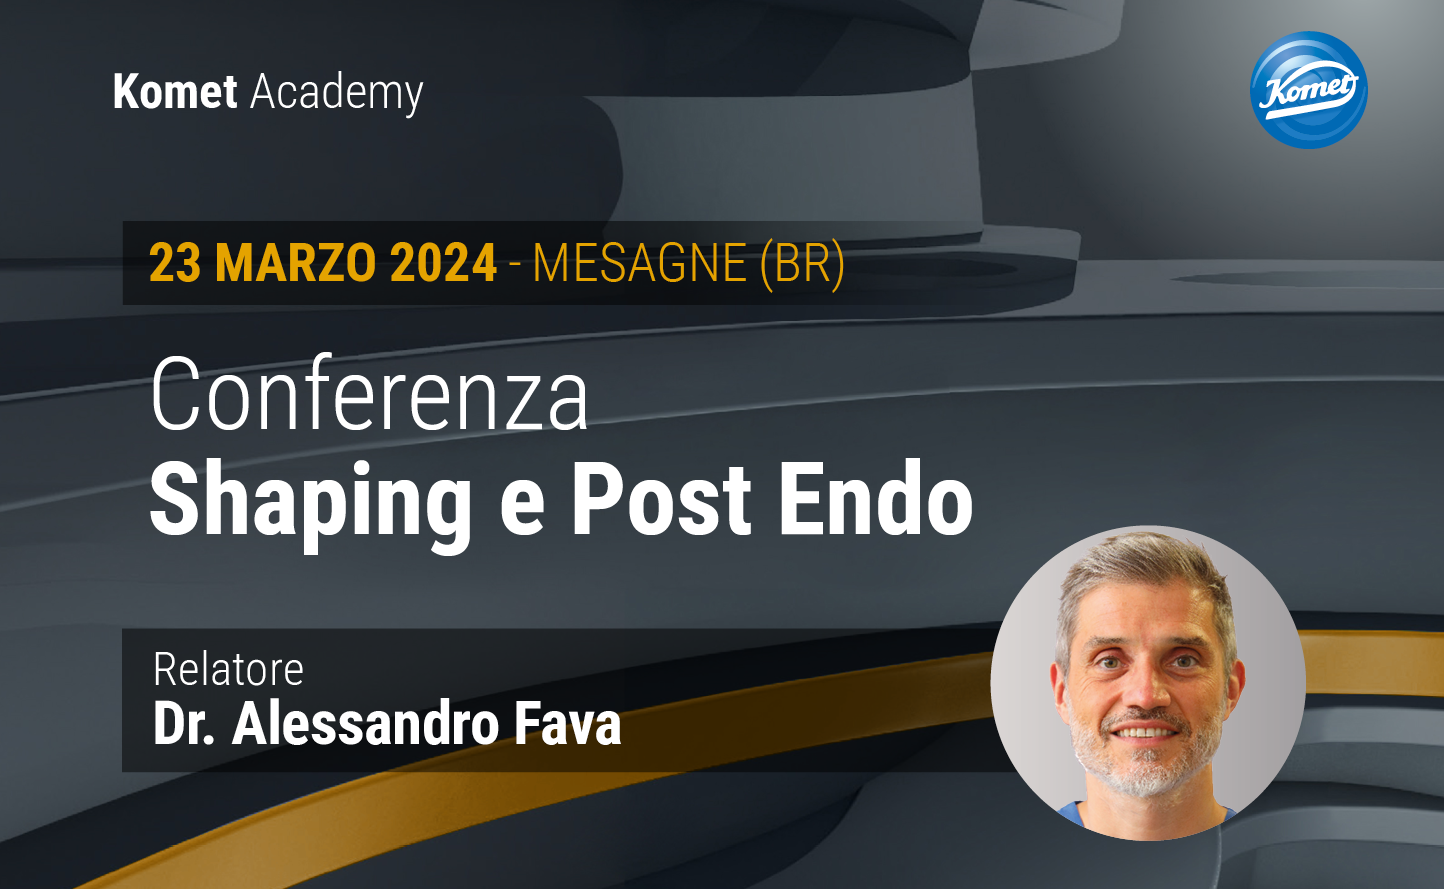 Conferenza Shaping e Post Endo - Dr. Alessandro Fava